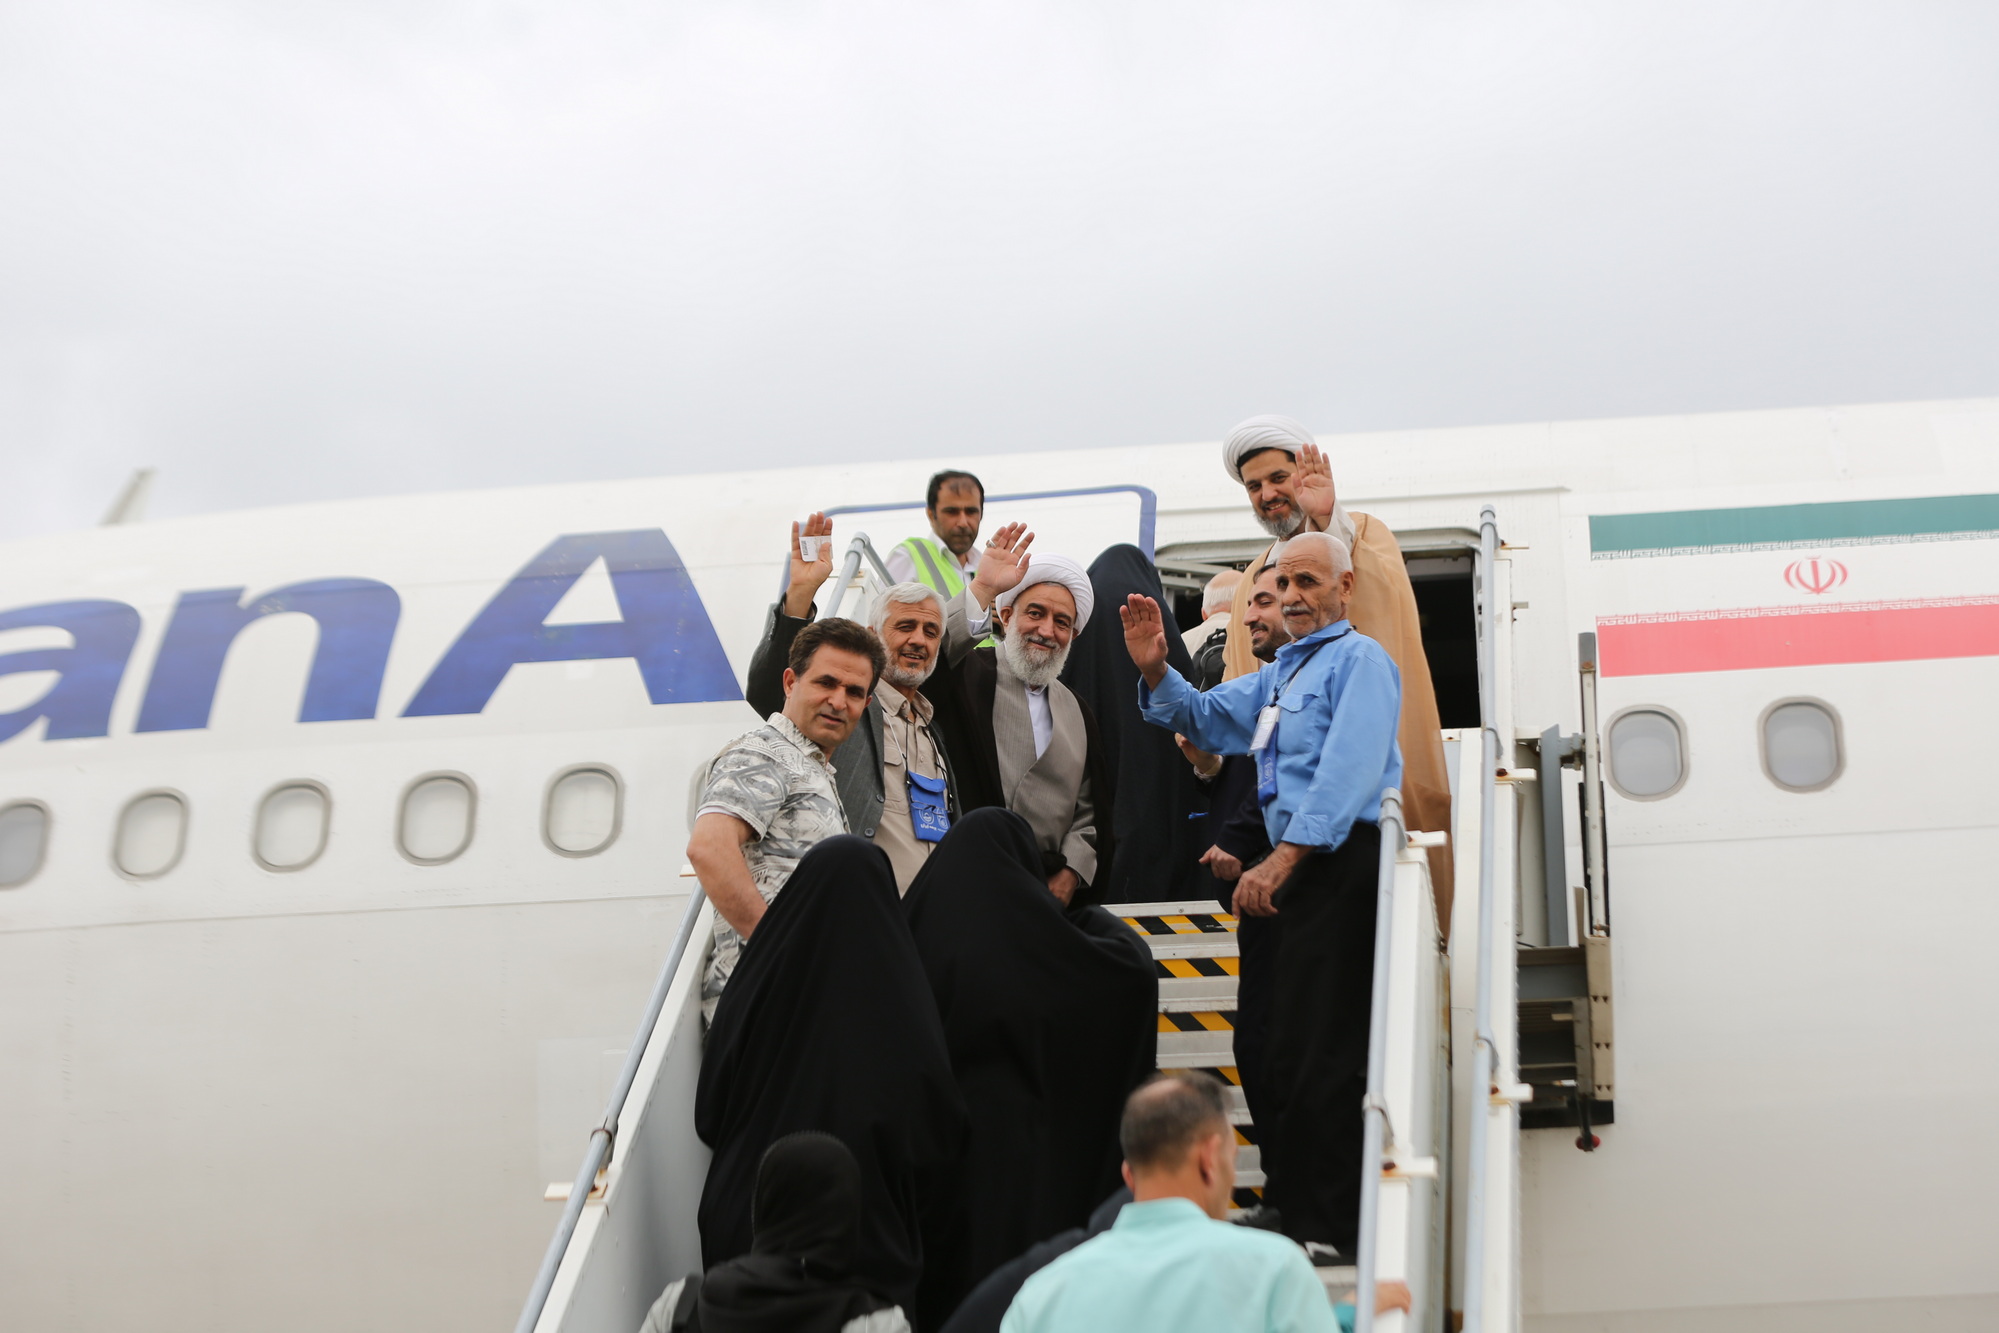 تصاویر / اعزام زائرین خانه خدا به حج عمره پس از نه سال انتظار از فرودگاه اصفهان